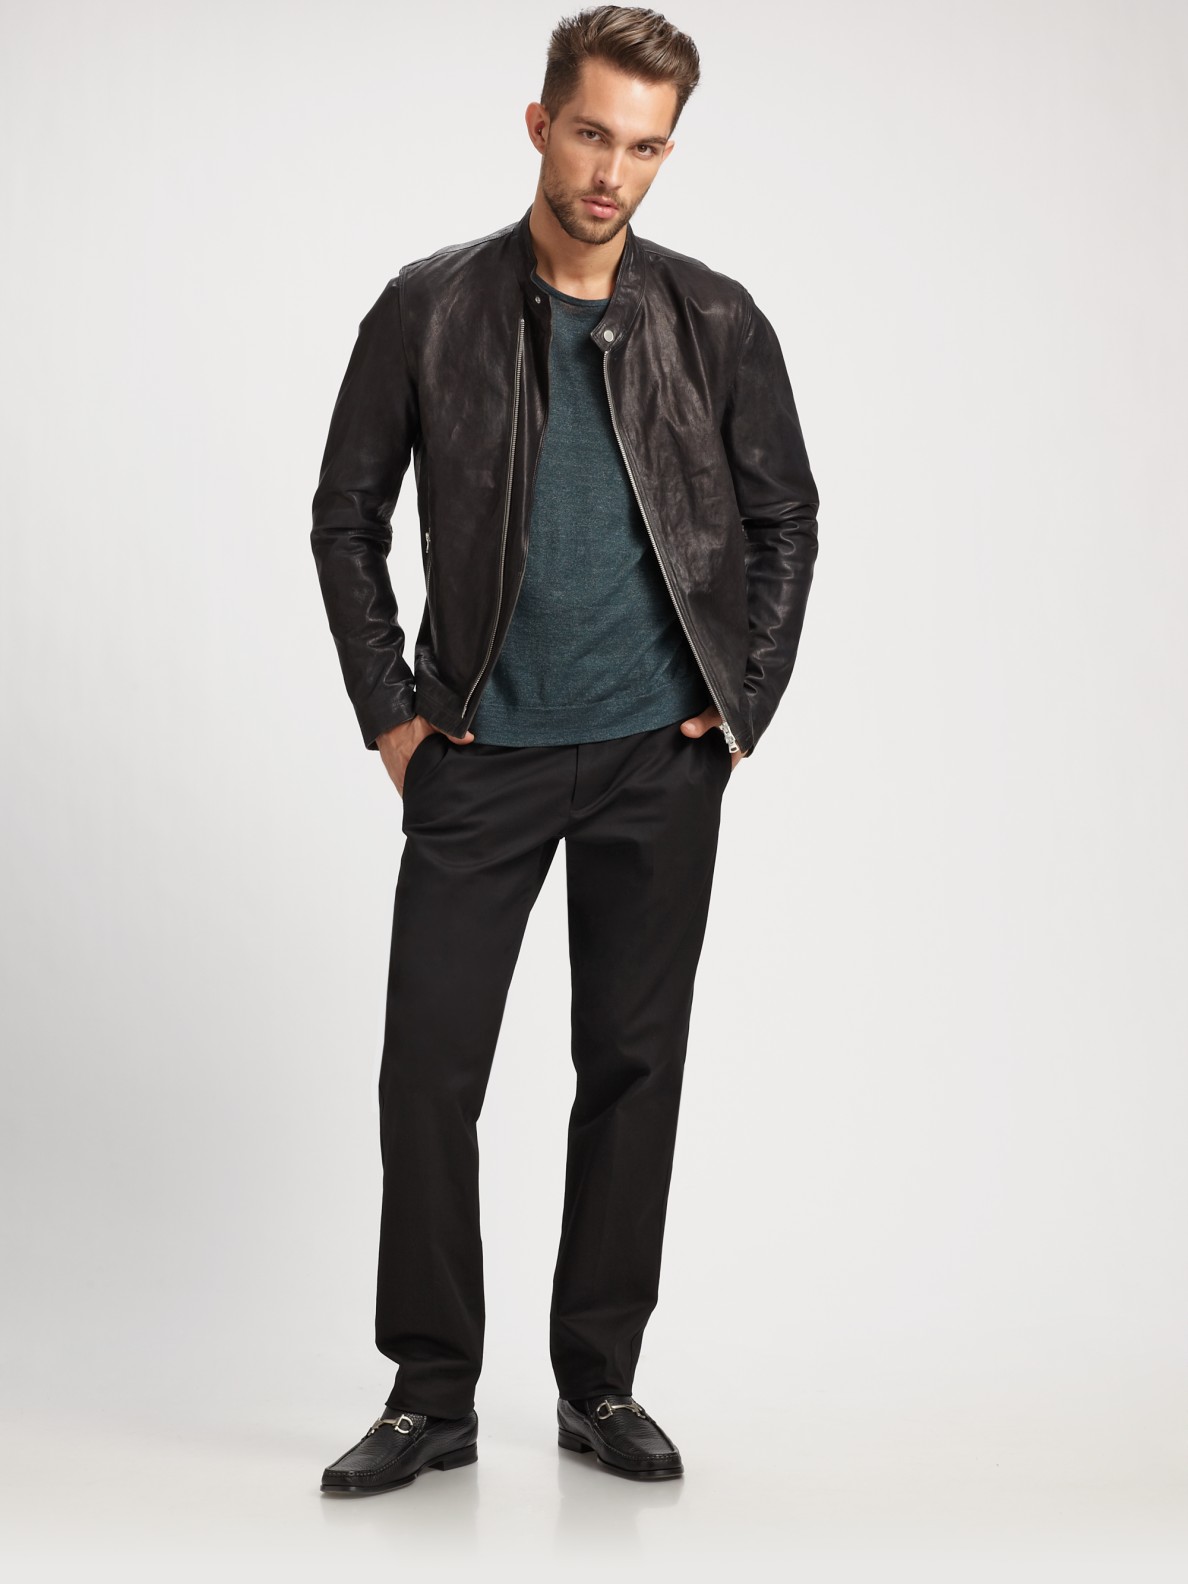 Lyst - Theory Jonan Leather Jacket in Black for Men